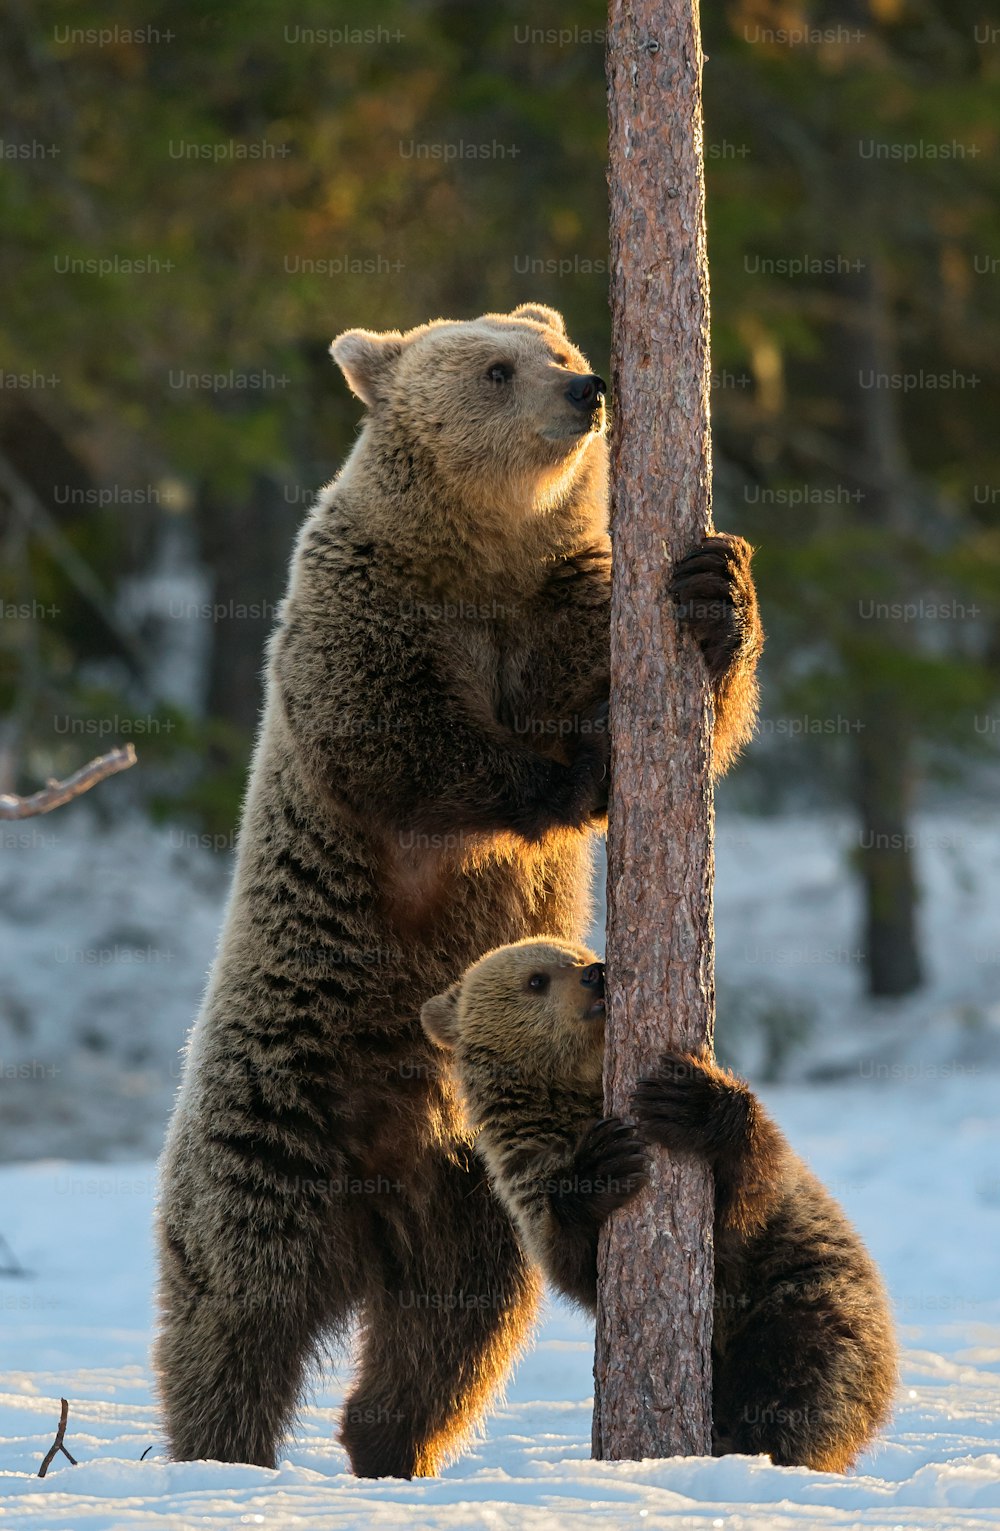 Ours et ourson. L’ours brun se tient sur ses pattes arrière près d’un pin dans la forêt d’hiver à la lumière du coucher du soleil. Nom scientifique : Ursus arctos. Habitat naturel. Saison d’hiver. n